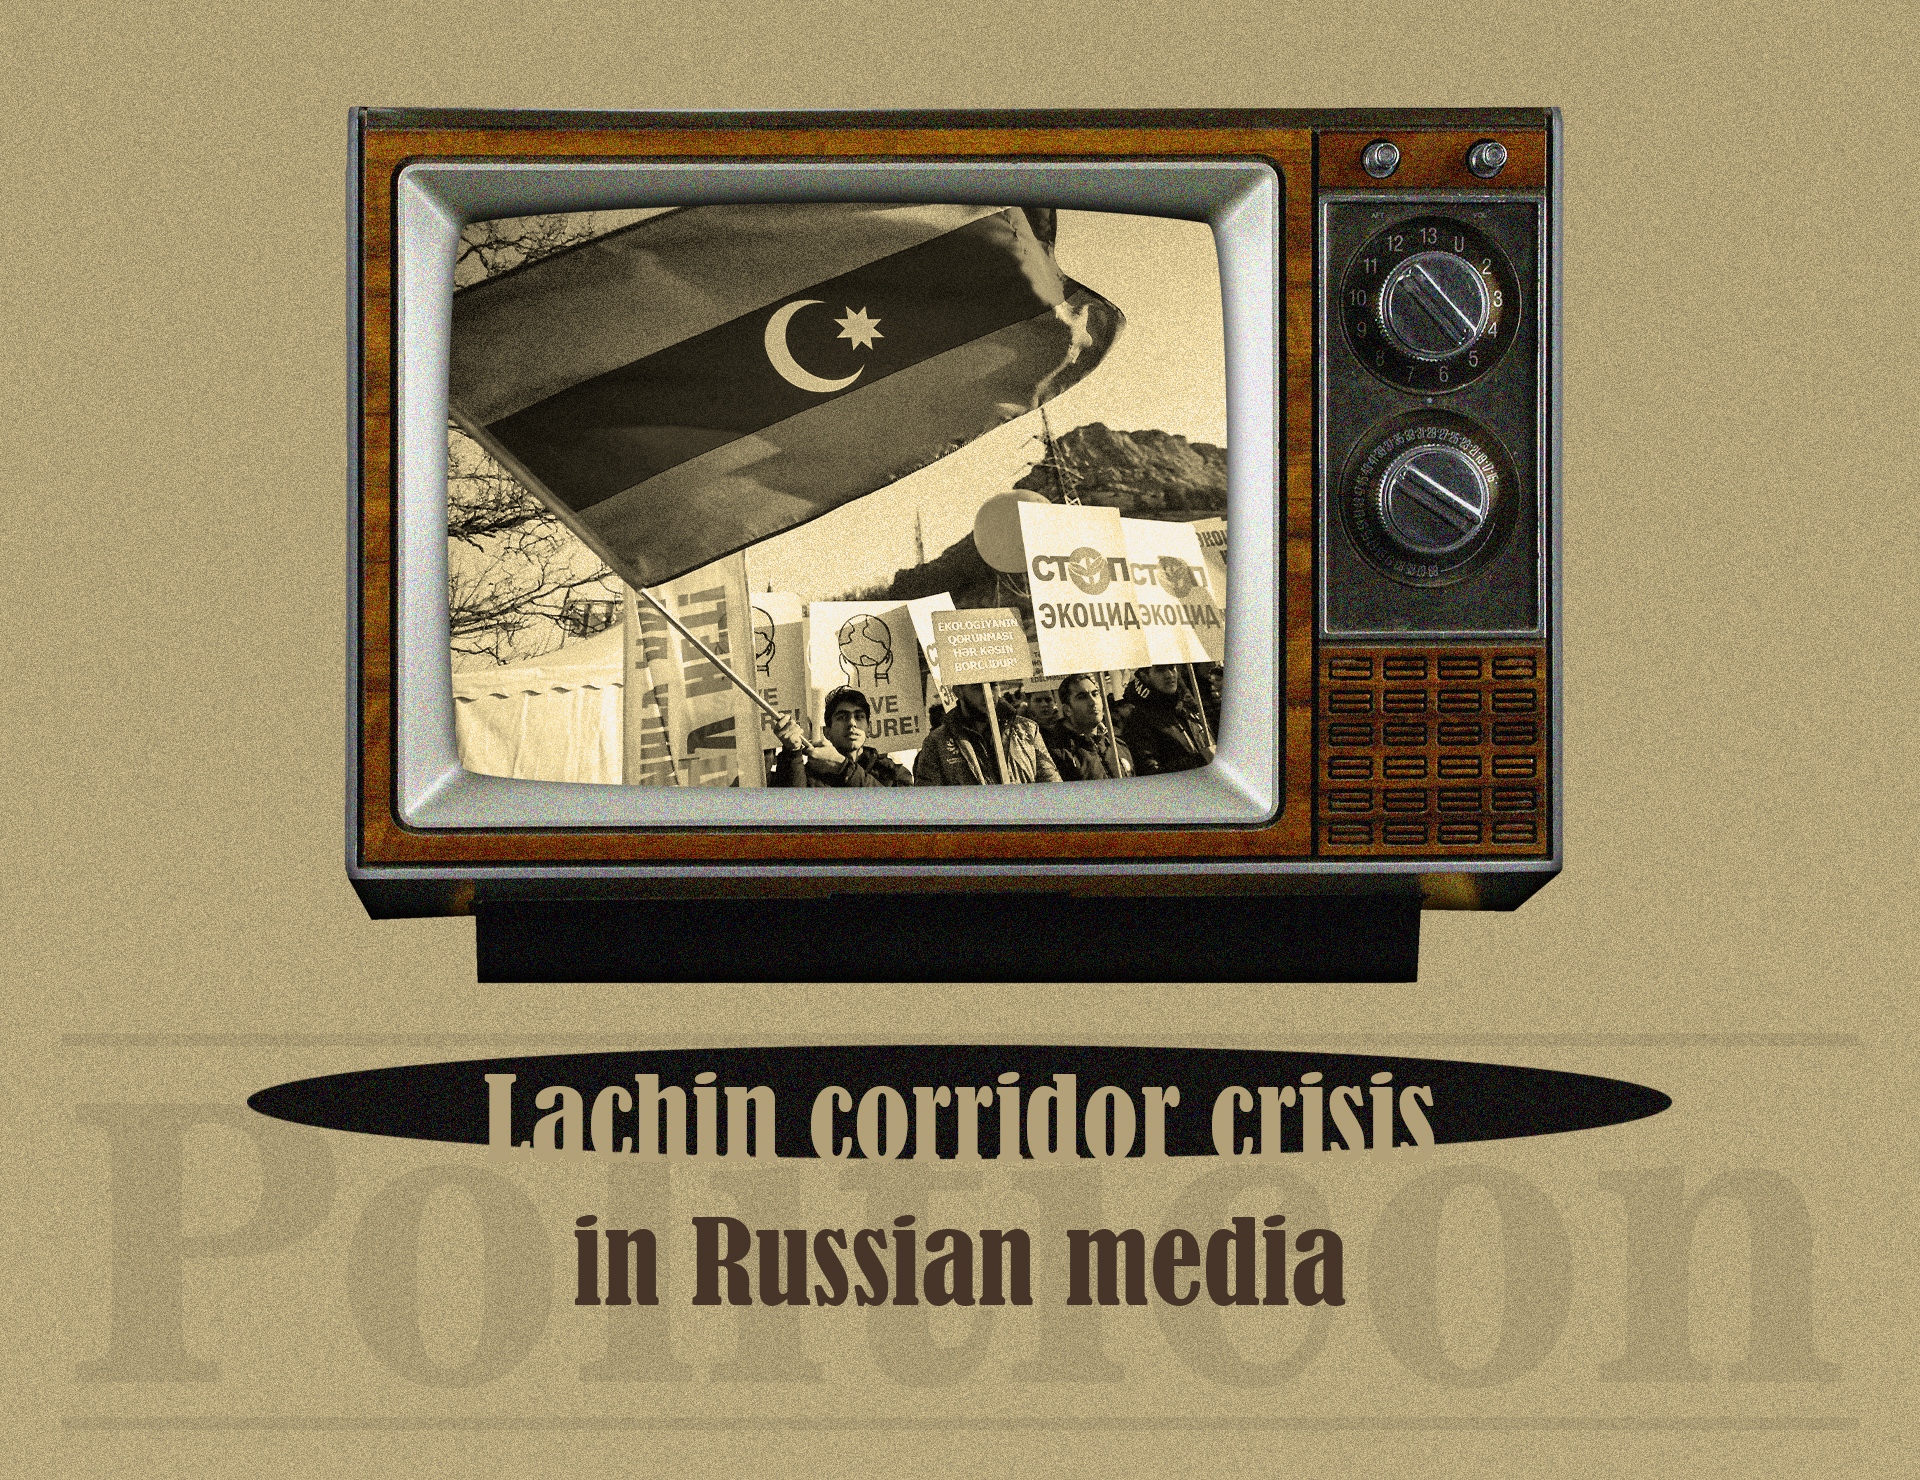 Lachin corridor crisis in Russian media